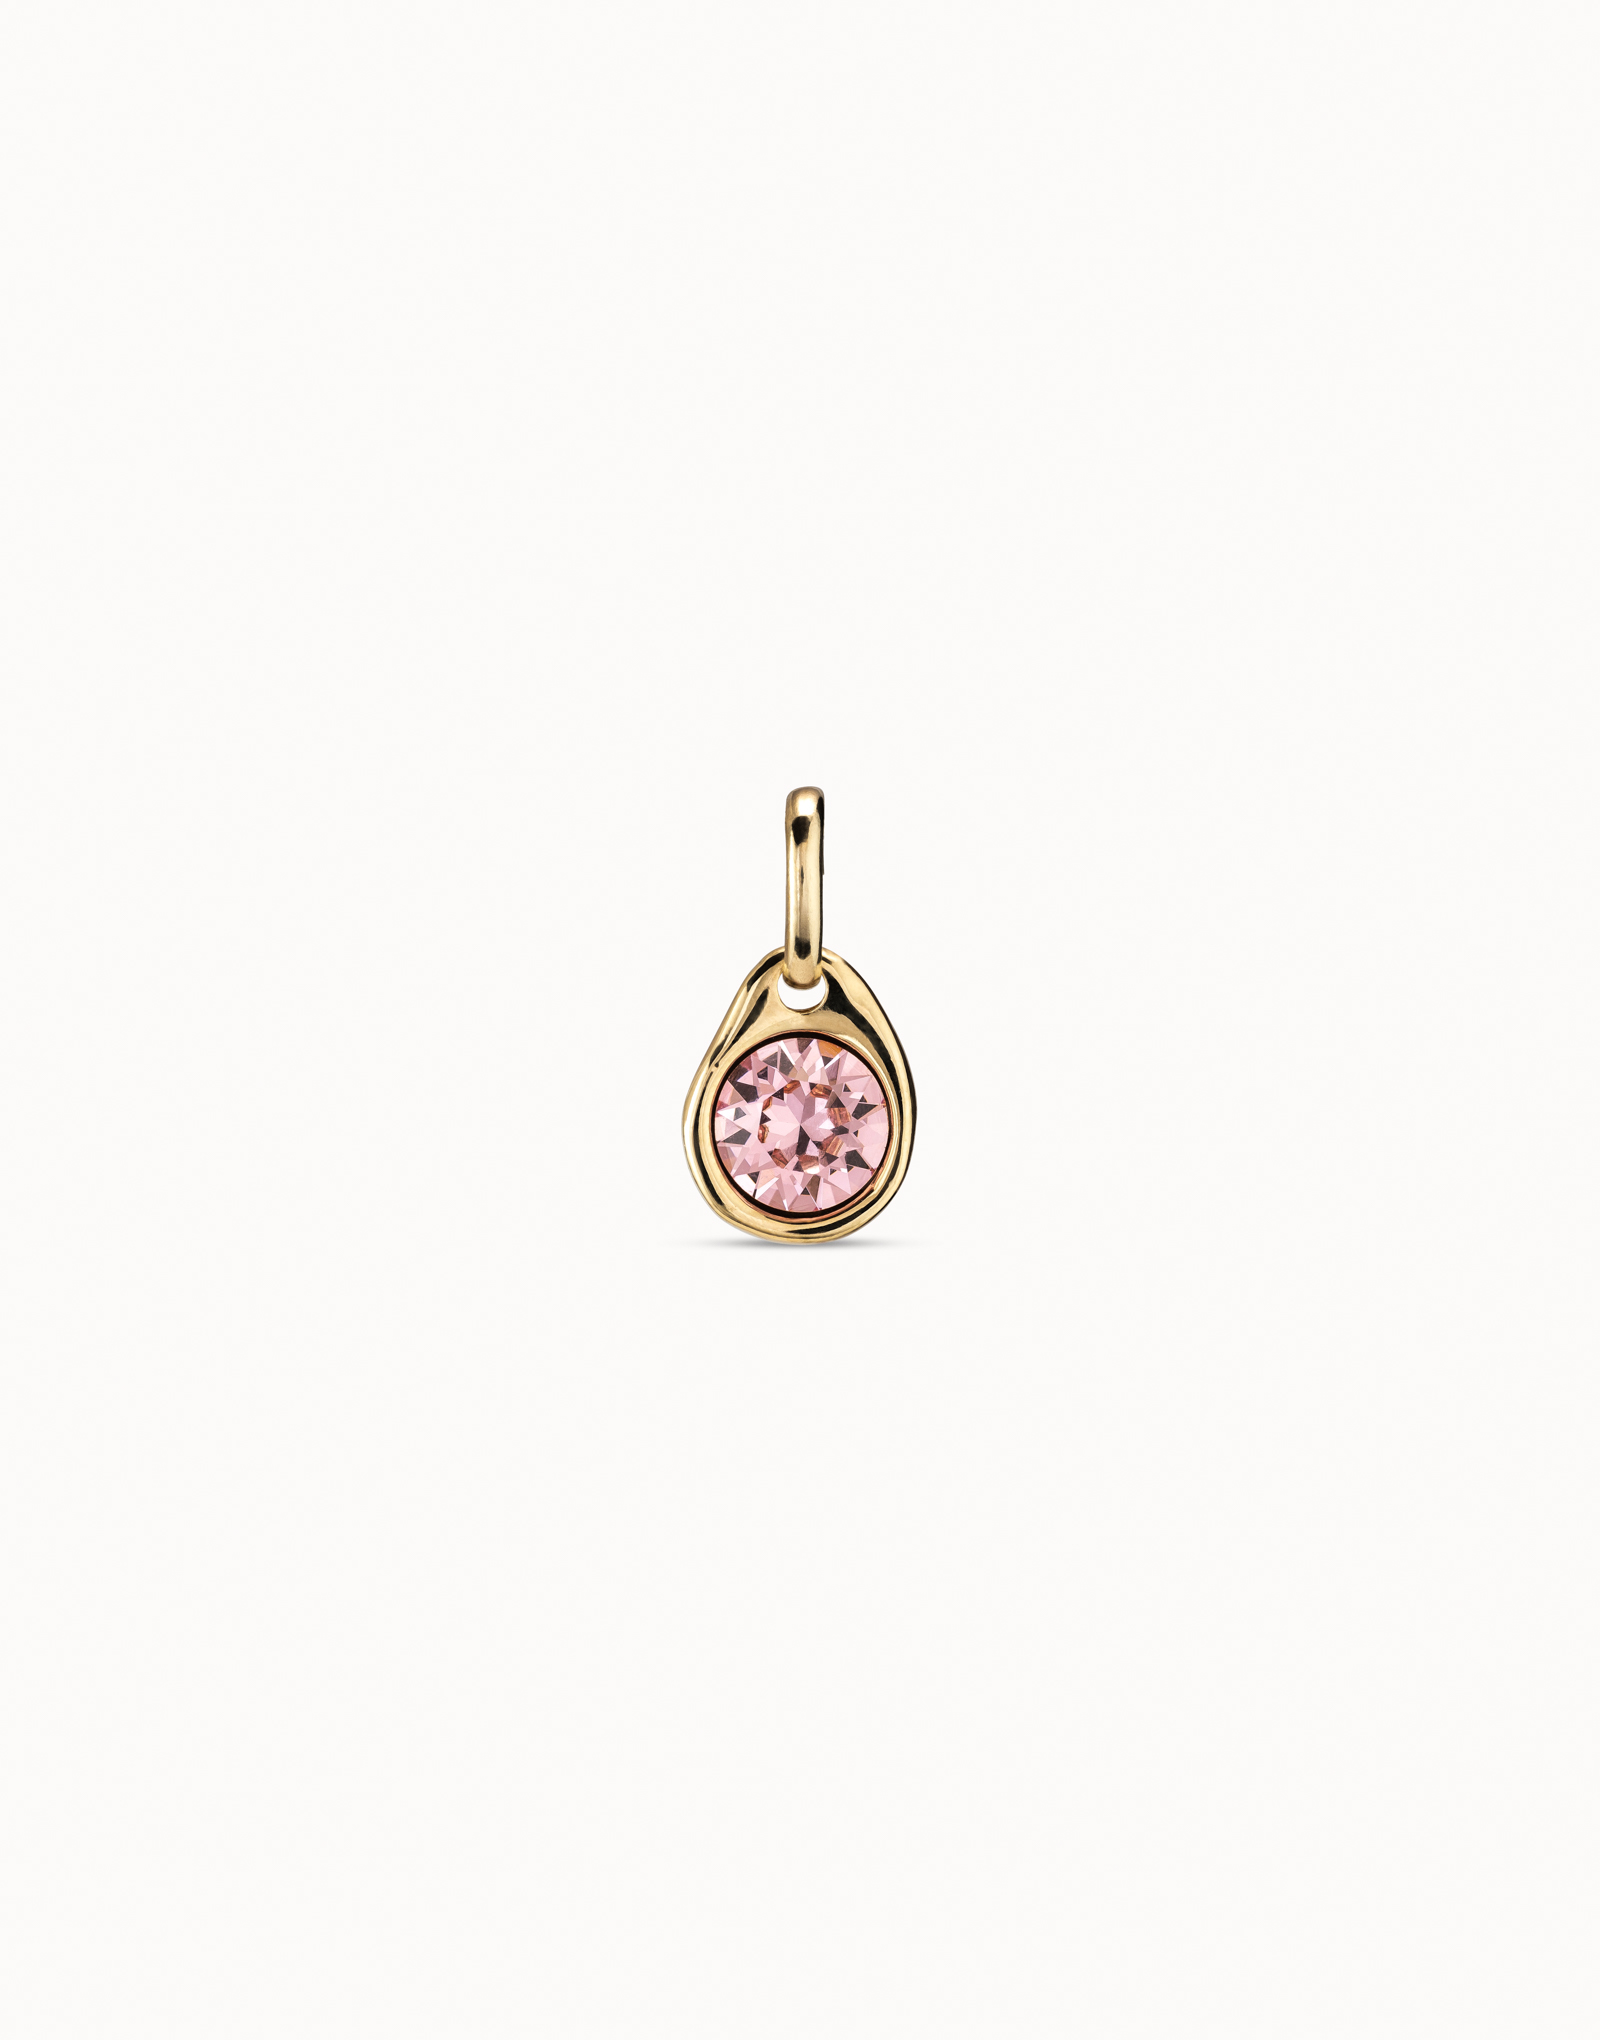 Charm bañado en oro con cristal rosa, Dorado, large image number null